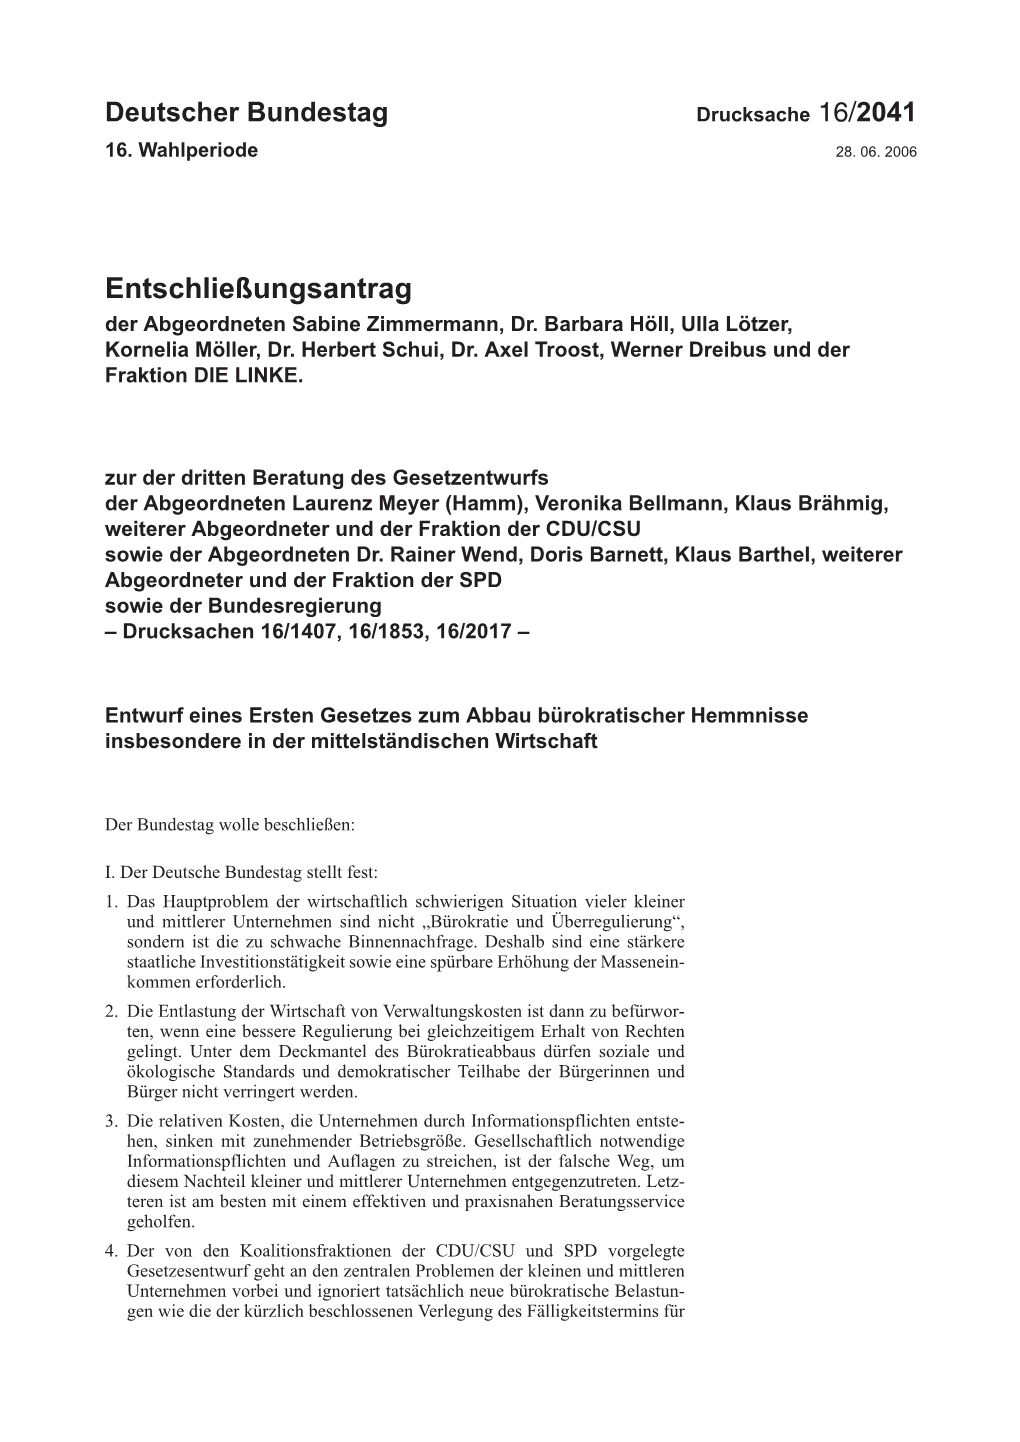 Entschließungsantrag Der Abgeordneten Sabine Zimmermann, Dr